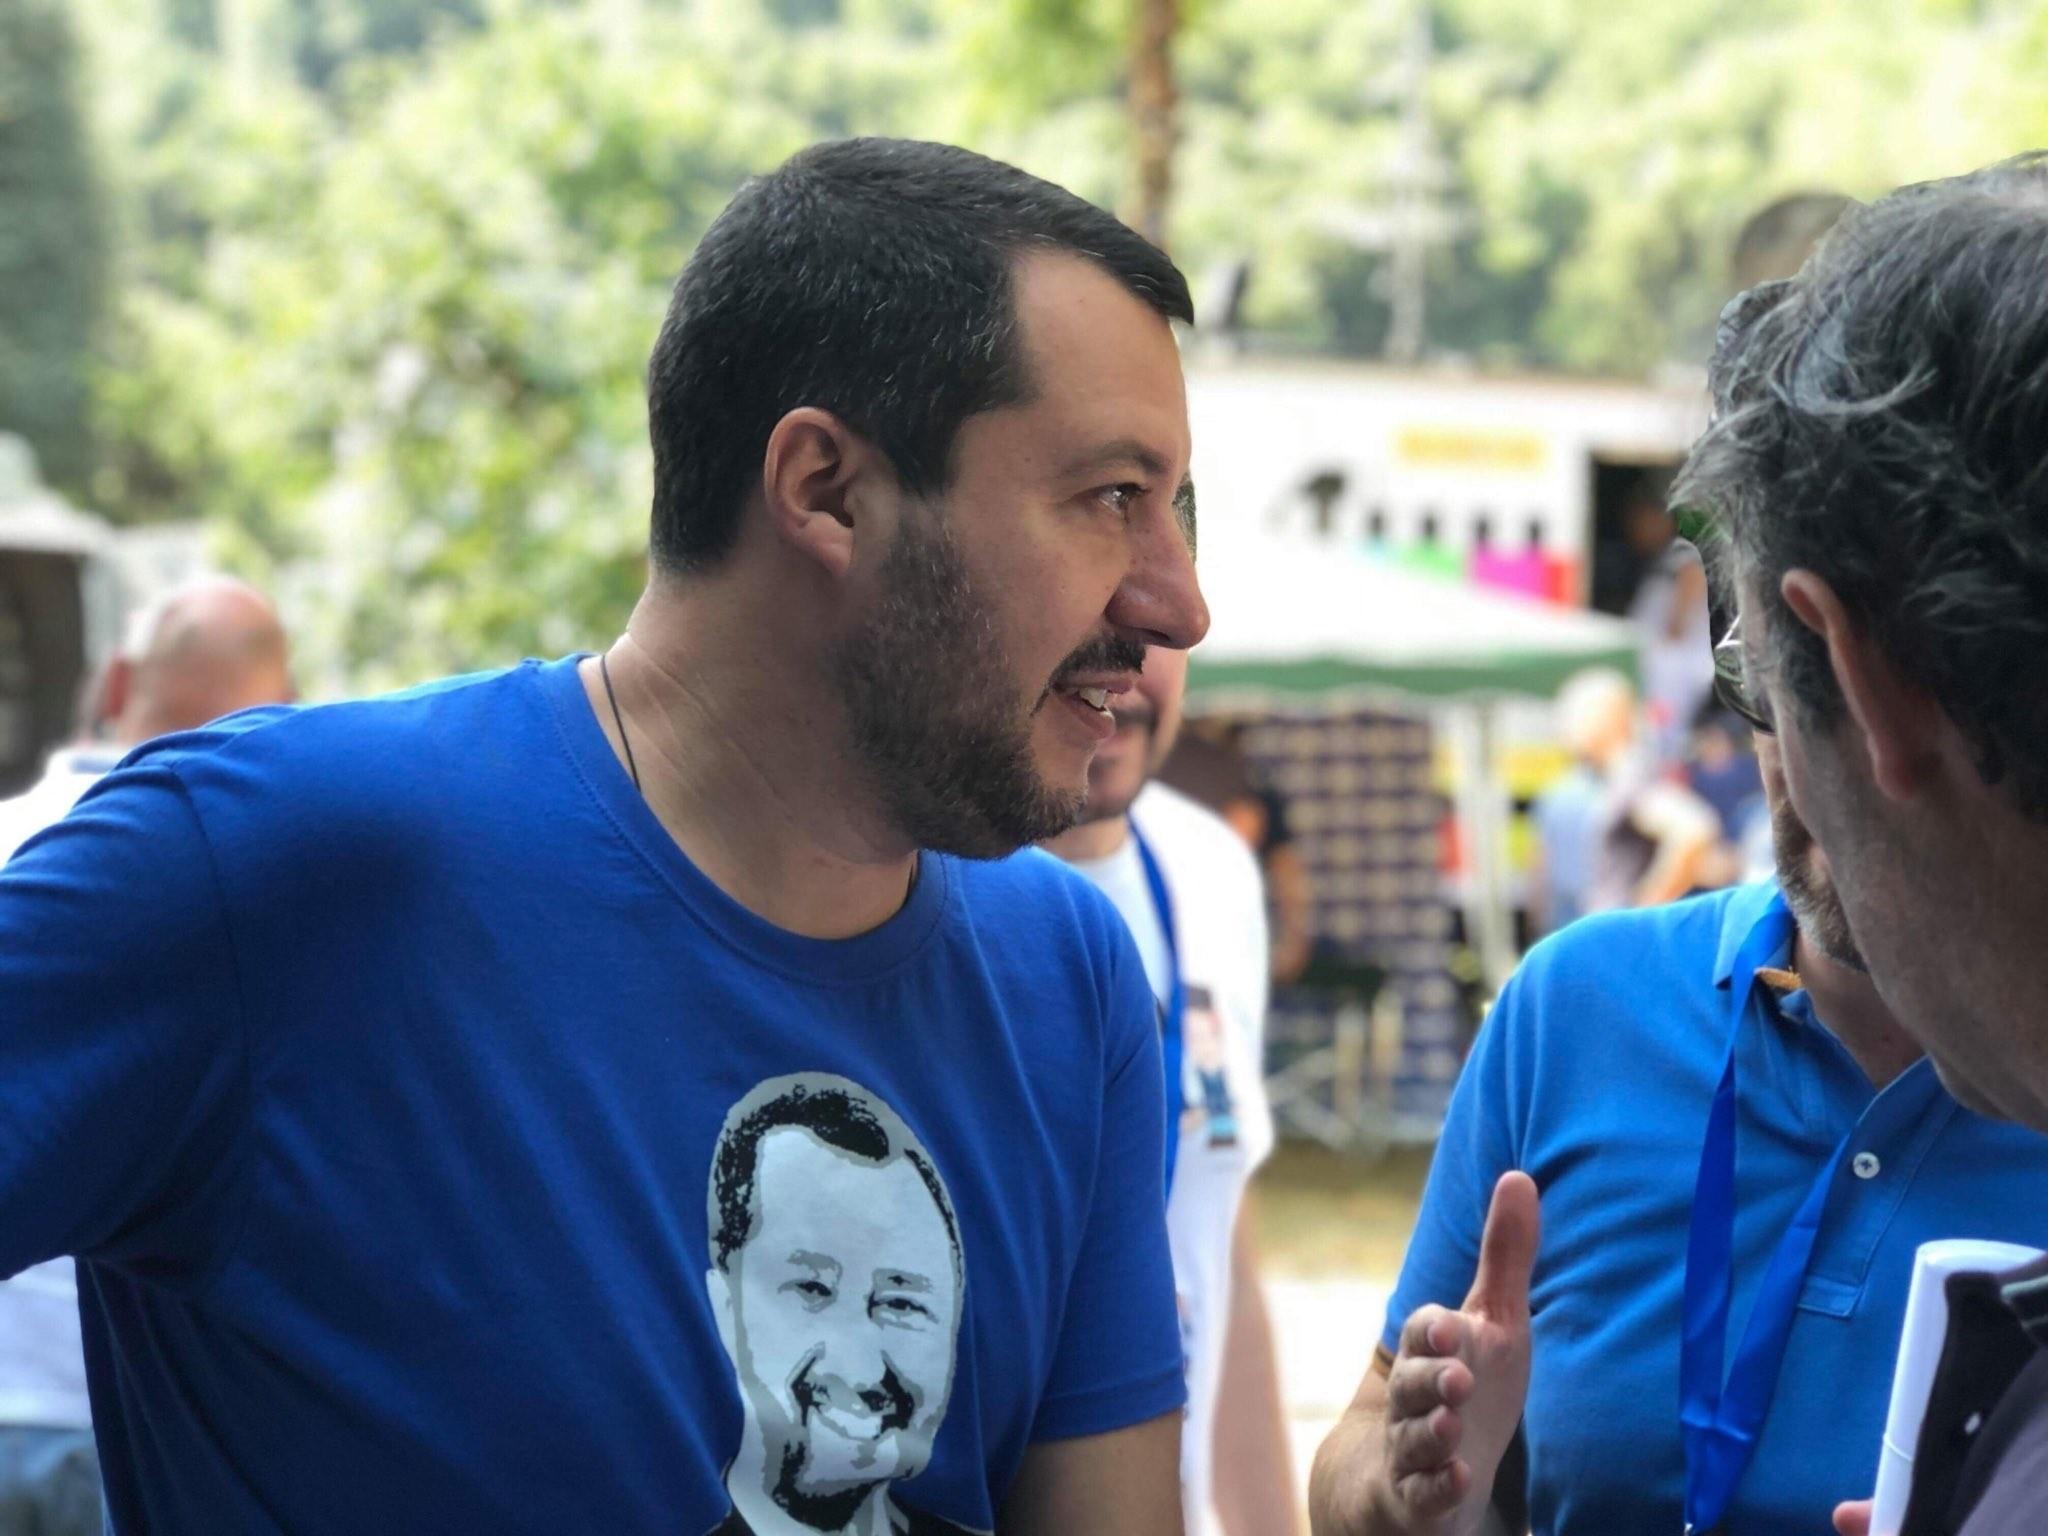 El vice primer ministro italiano, Matteo Salvini, vistiendo una camiseta con su propia cara